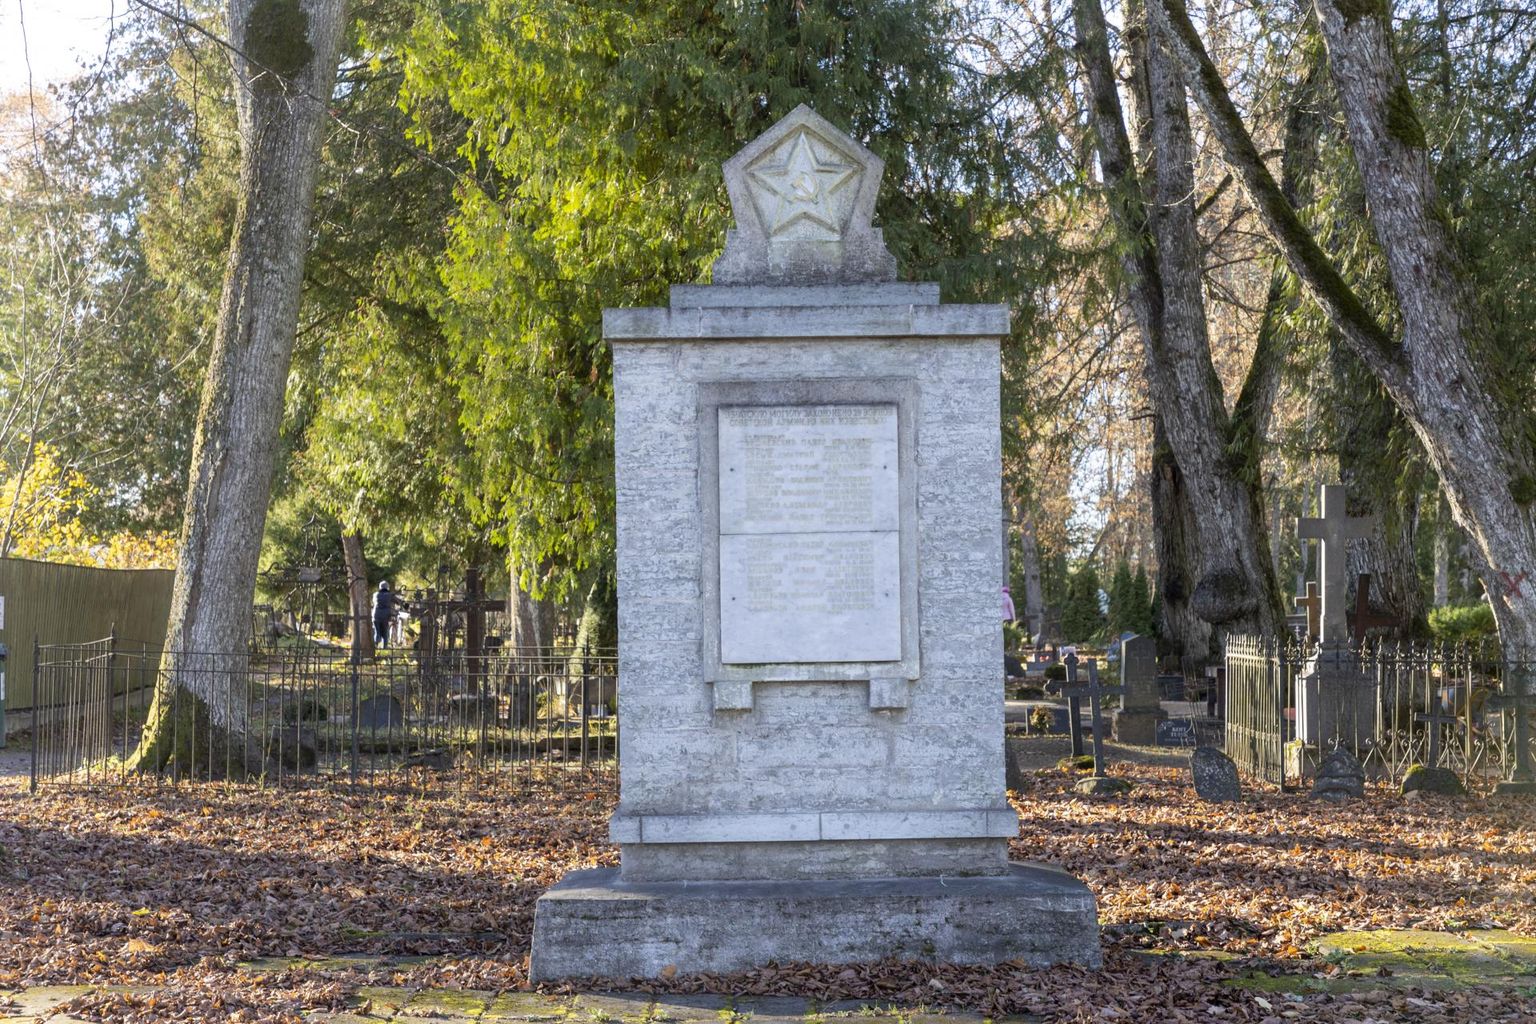 Reopalu kalmistul asuv teises maailmasõjas langenud nõukogude võitlejatele pühendatud mälestusmärk on Paide linna haldusterritooriumil ainus, mille juurde on eeldatavasti kedagi maetud.